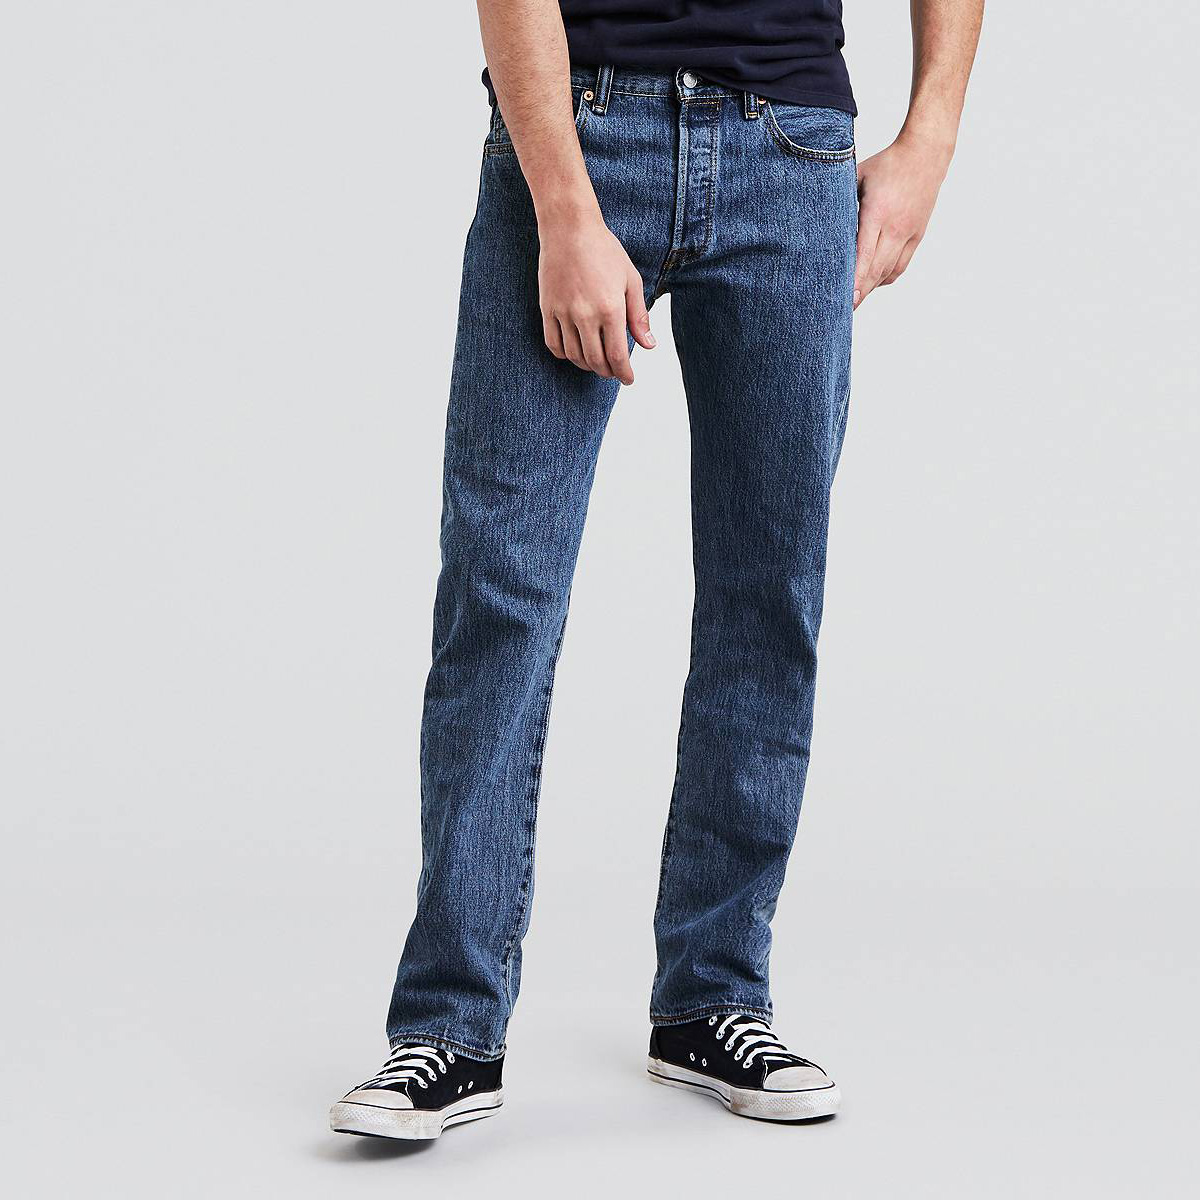 Top shop bán quần jeans nam cao cấp tại Quận 6, TP.HCM